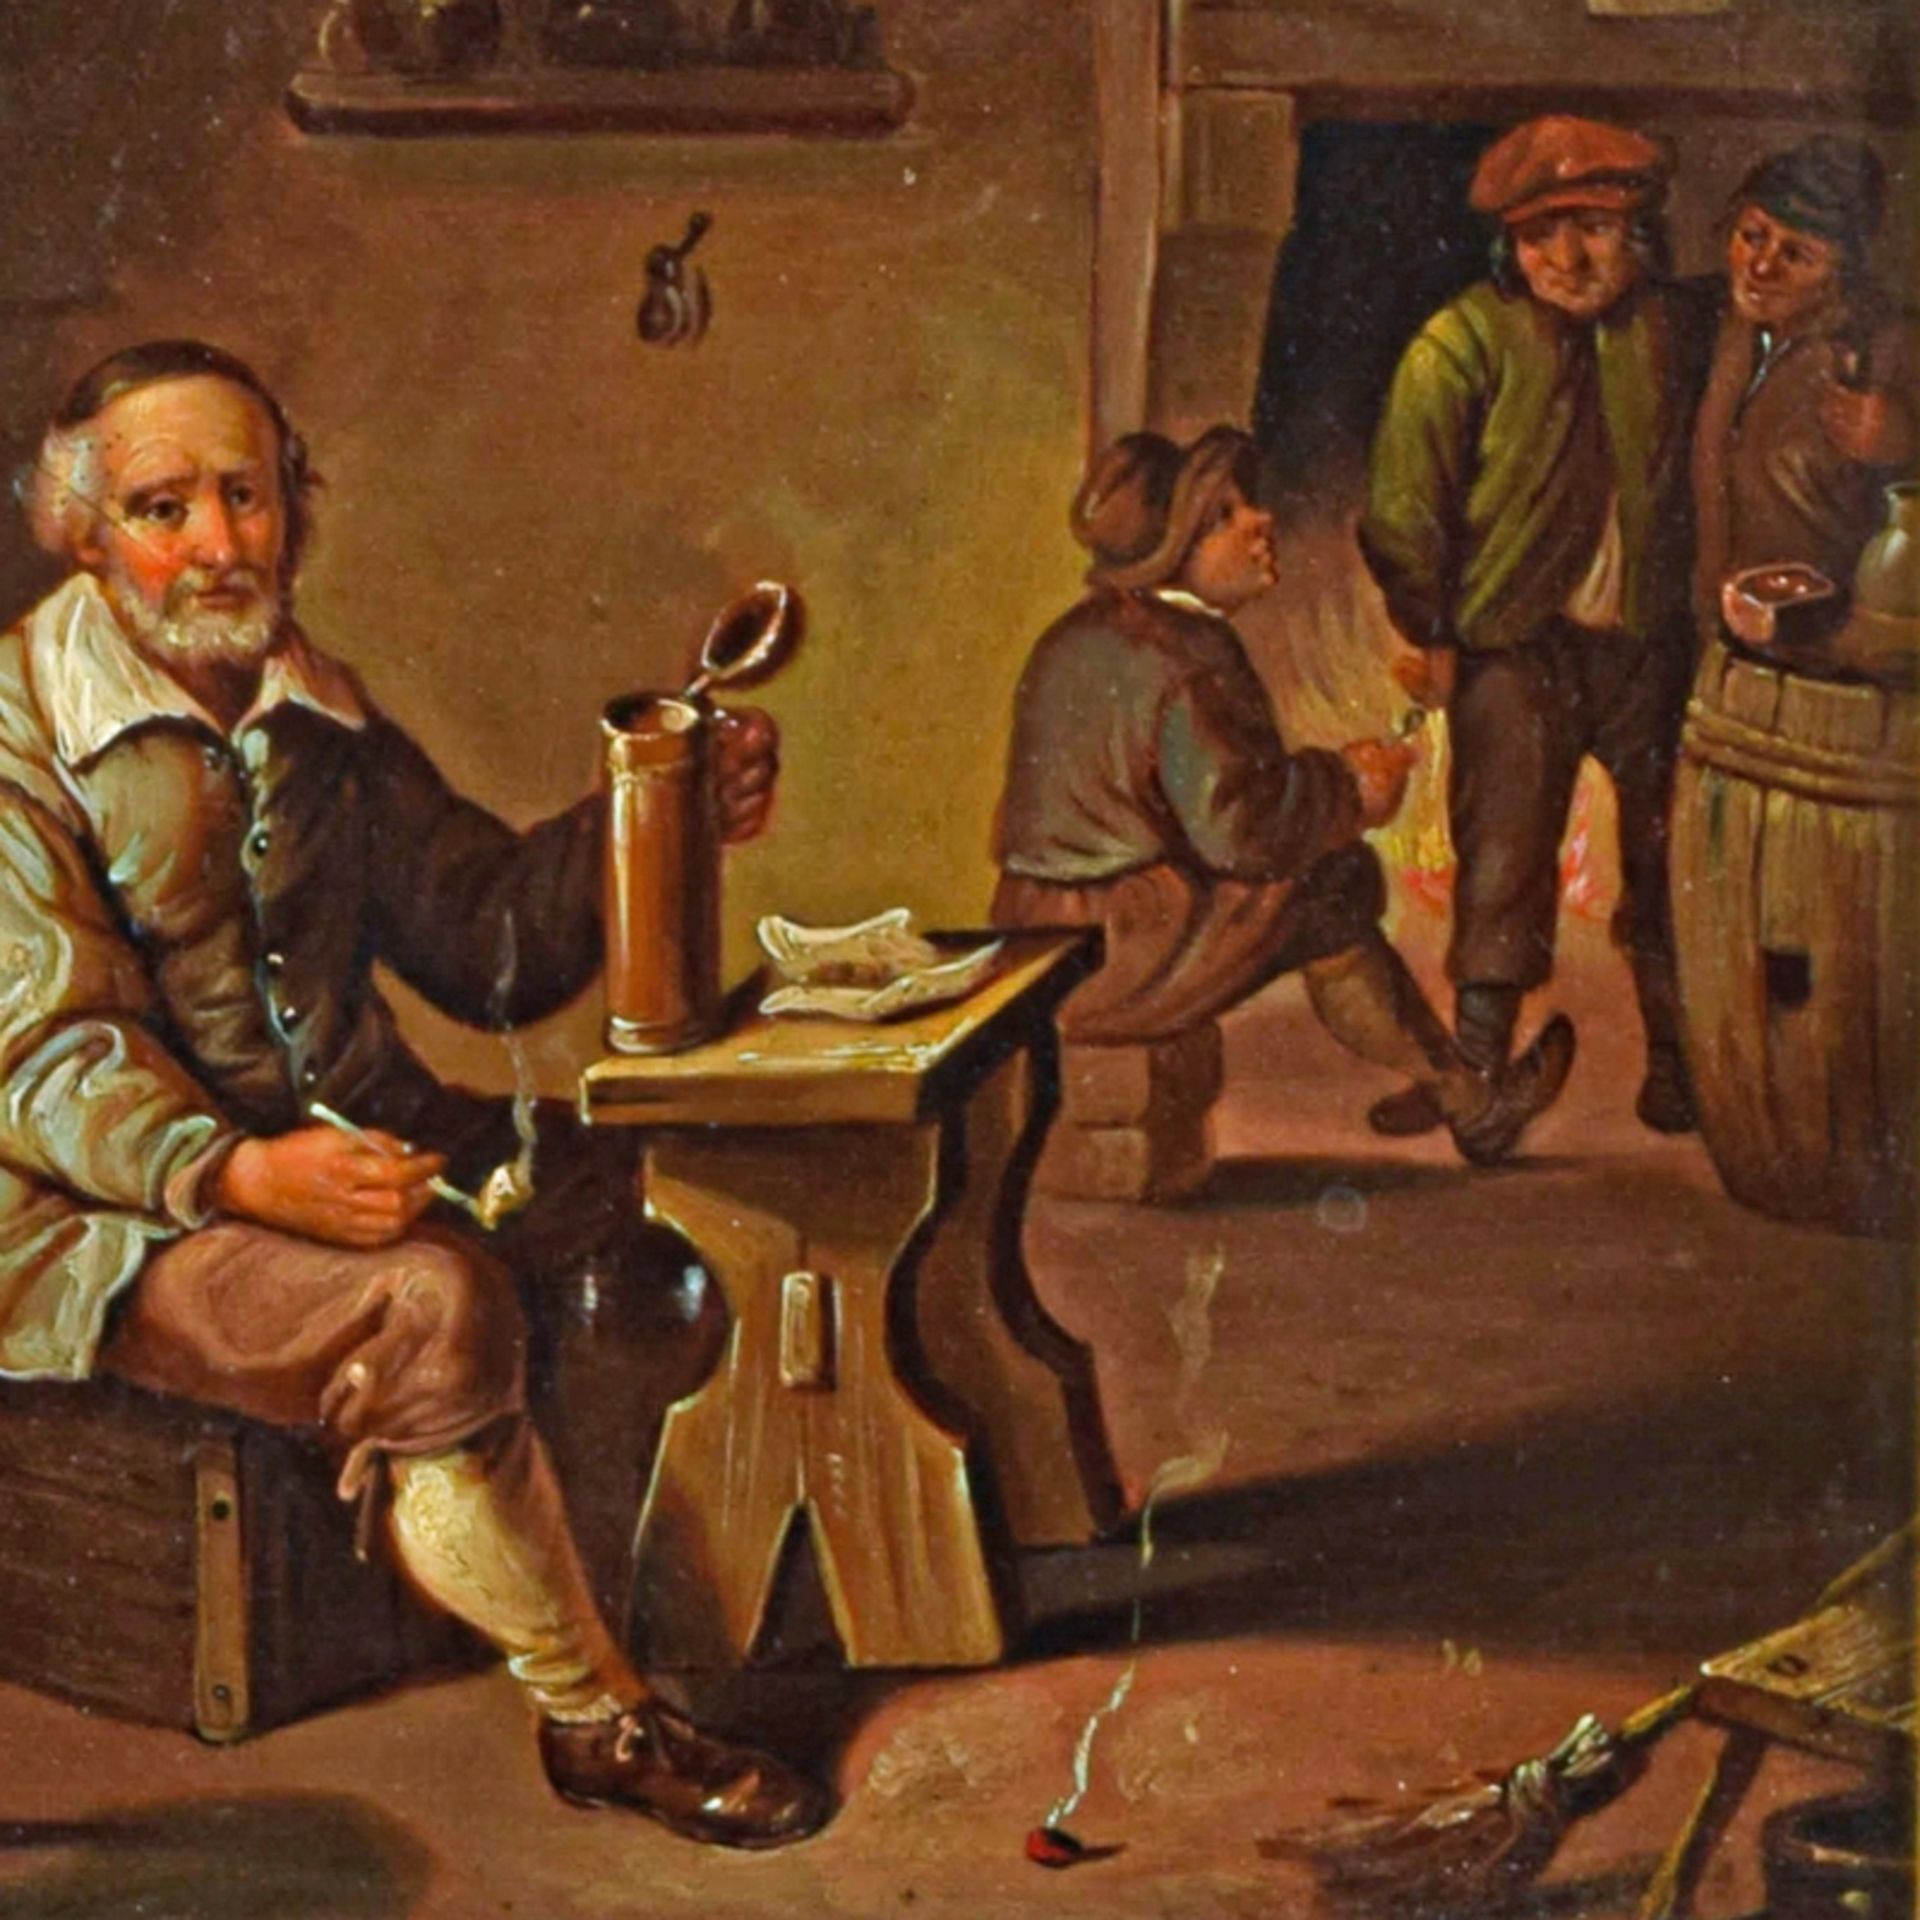 Mann mit Krug in Stube sitzend